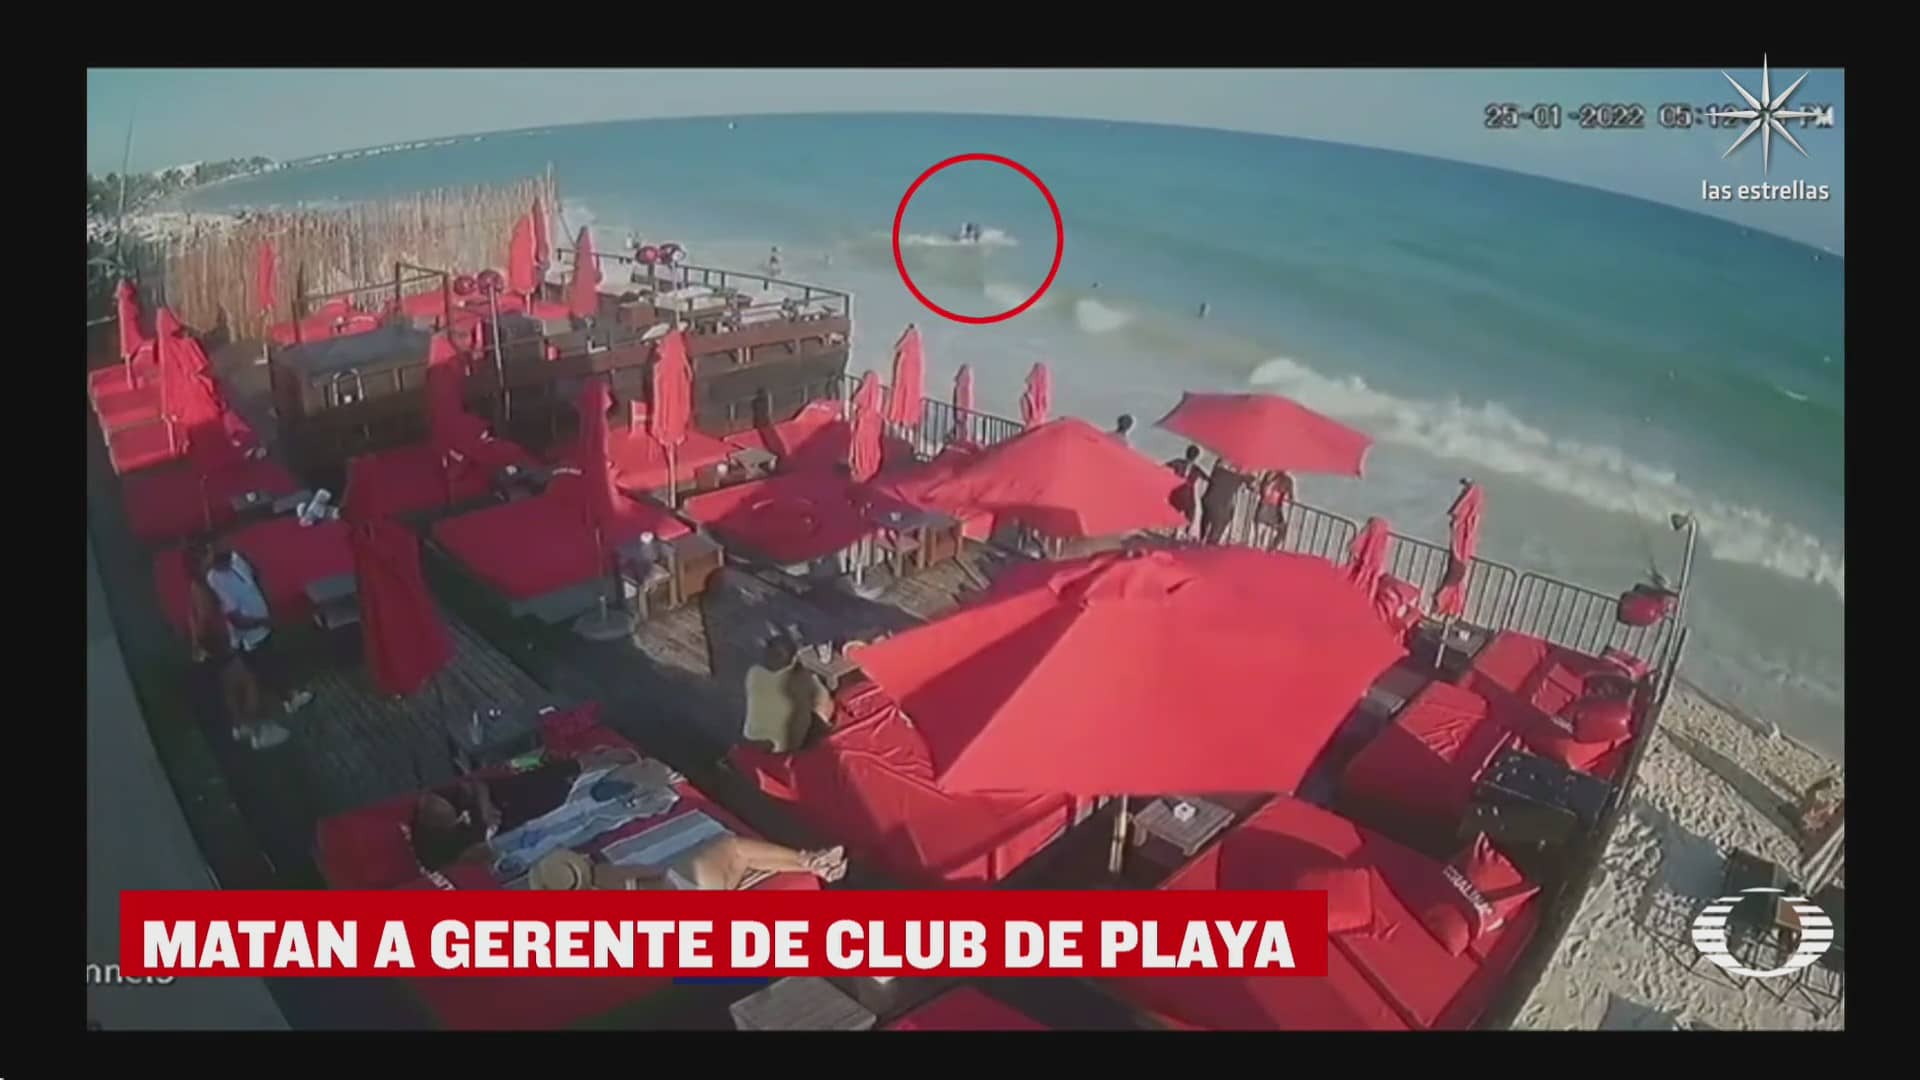 asesinan a hombre en habitacion del club de playa mamitas beach